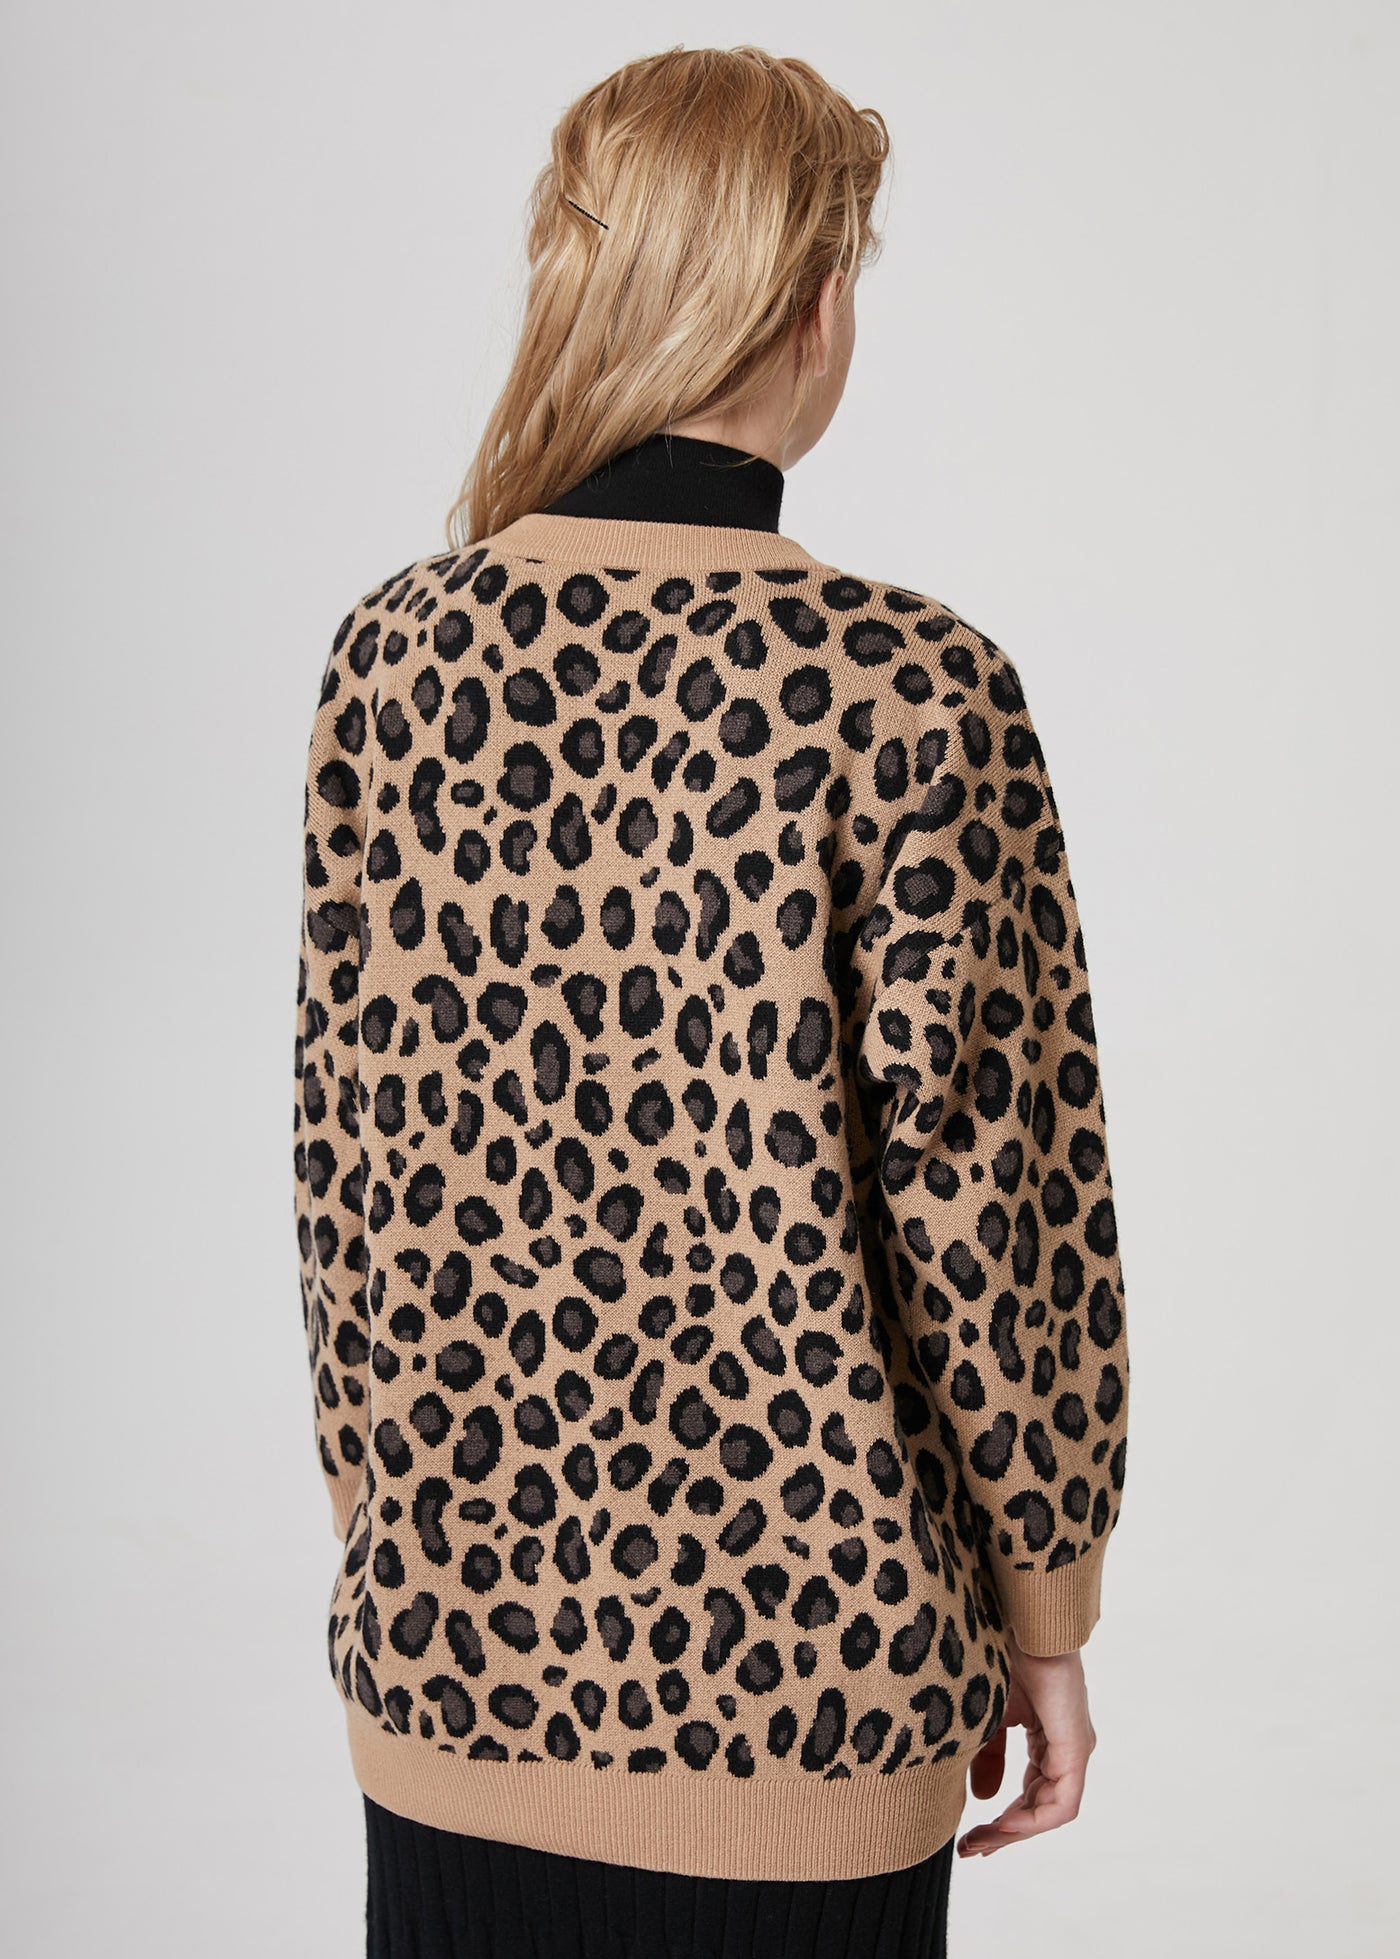 Leopard Jacquard Cashmere Cardigan